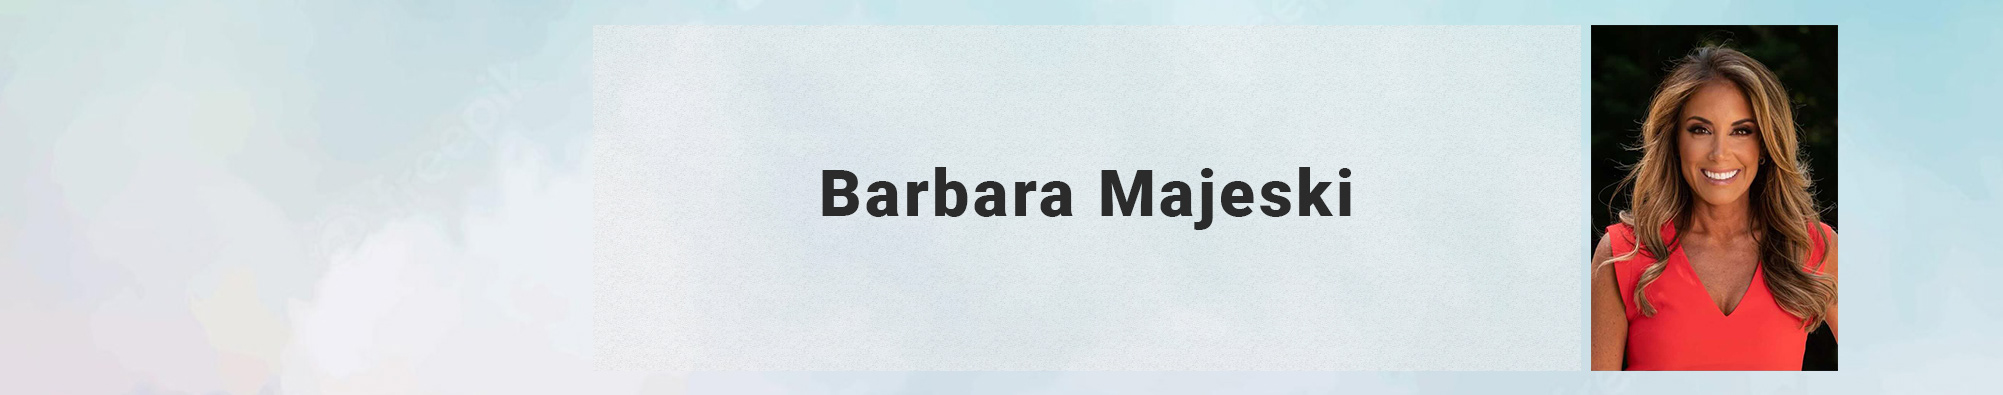 Barbara Majeski's profile banner